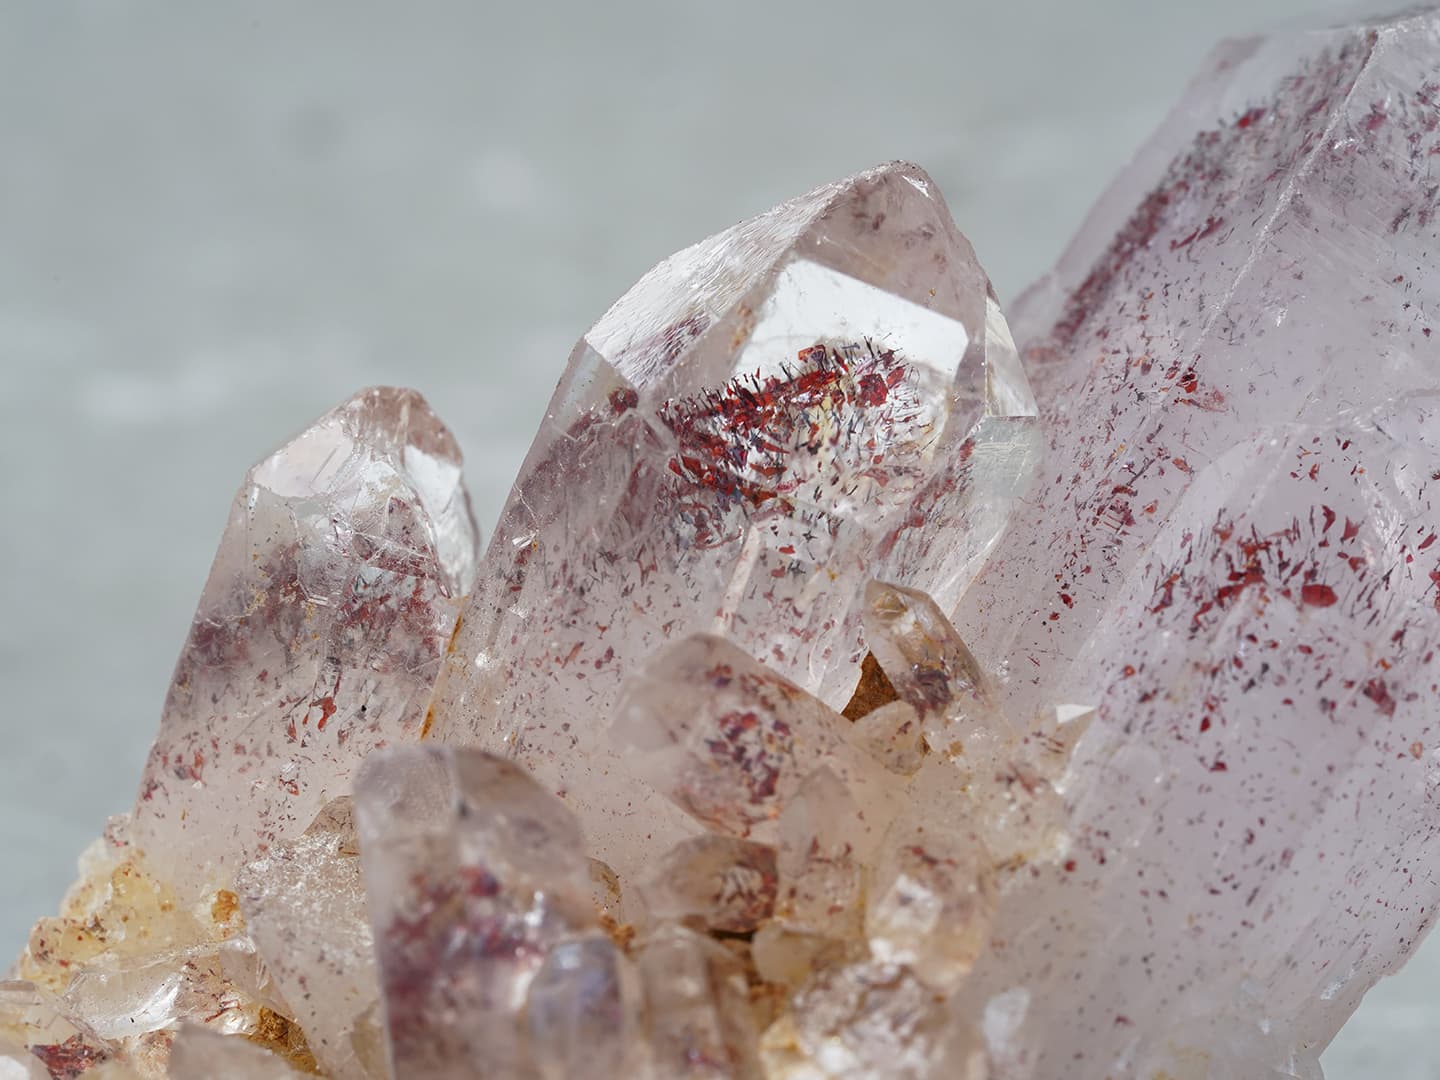 Phantom lepidocrocite in quartz 94.8g /レピドクロサイト・イン・クォーツ